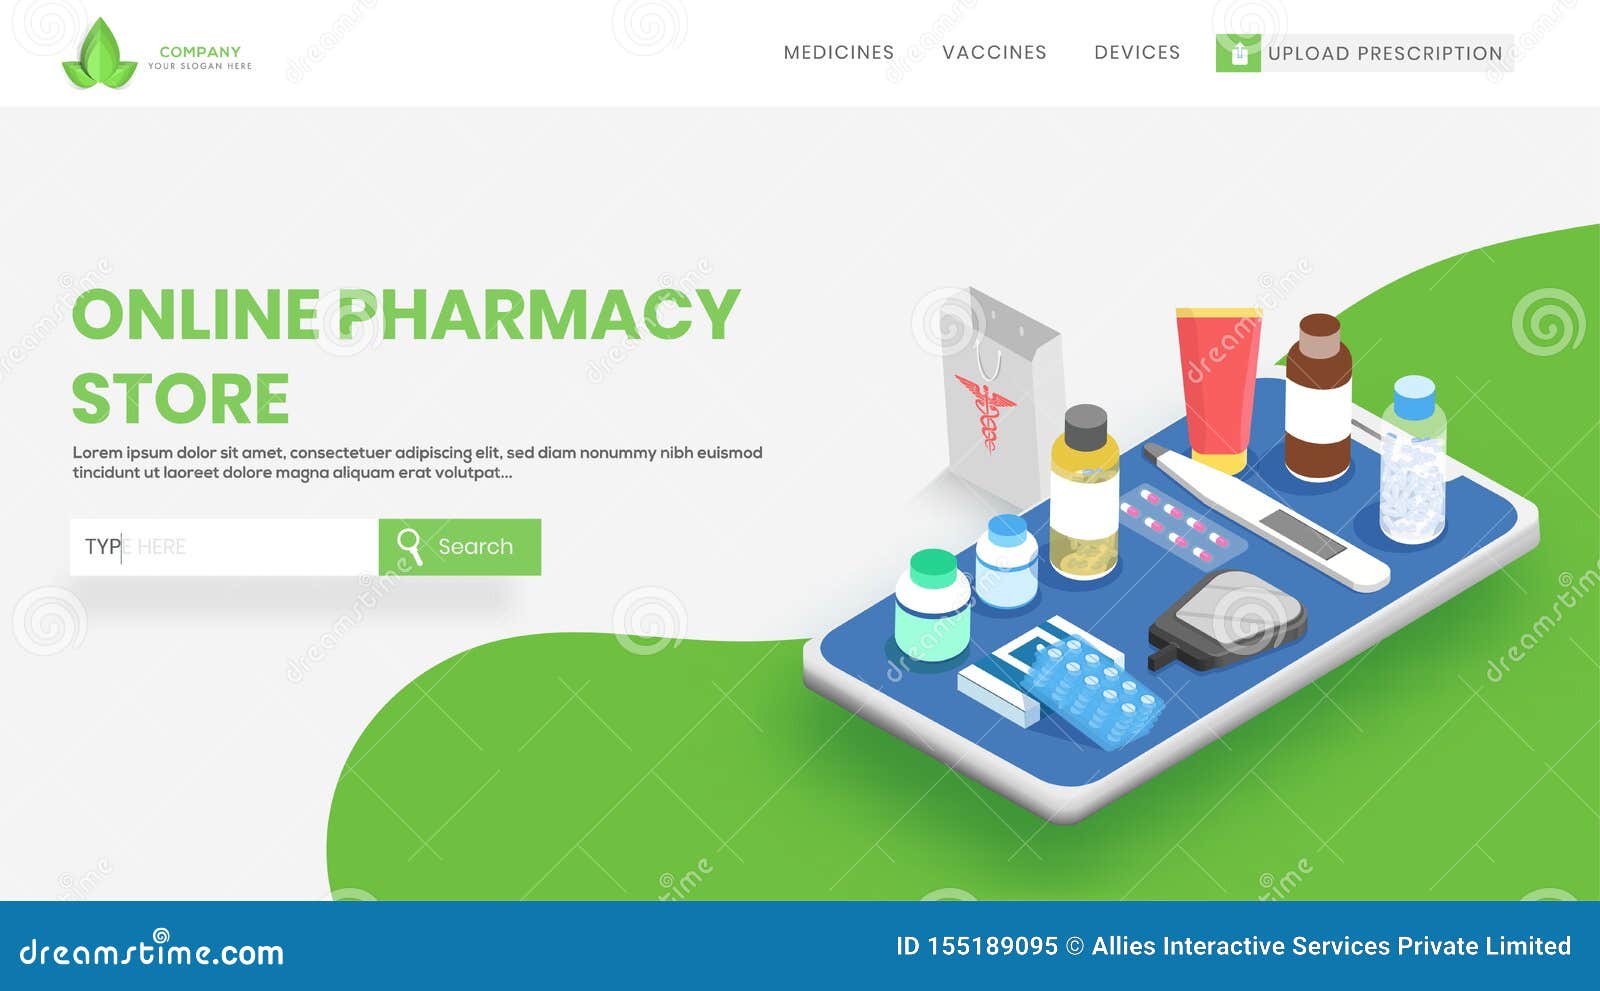 Найдите онлайн-аптеку с государственной лицензией FDA